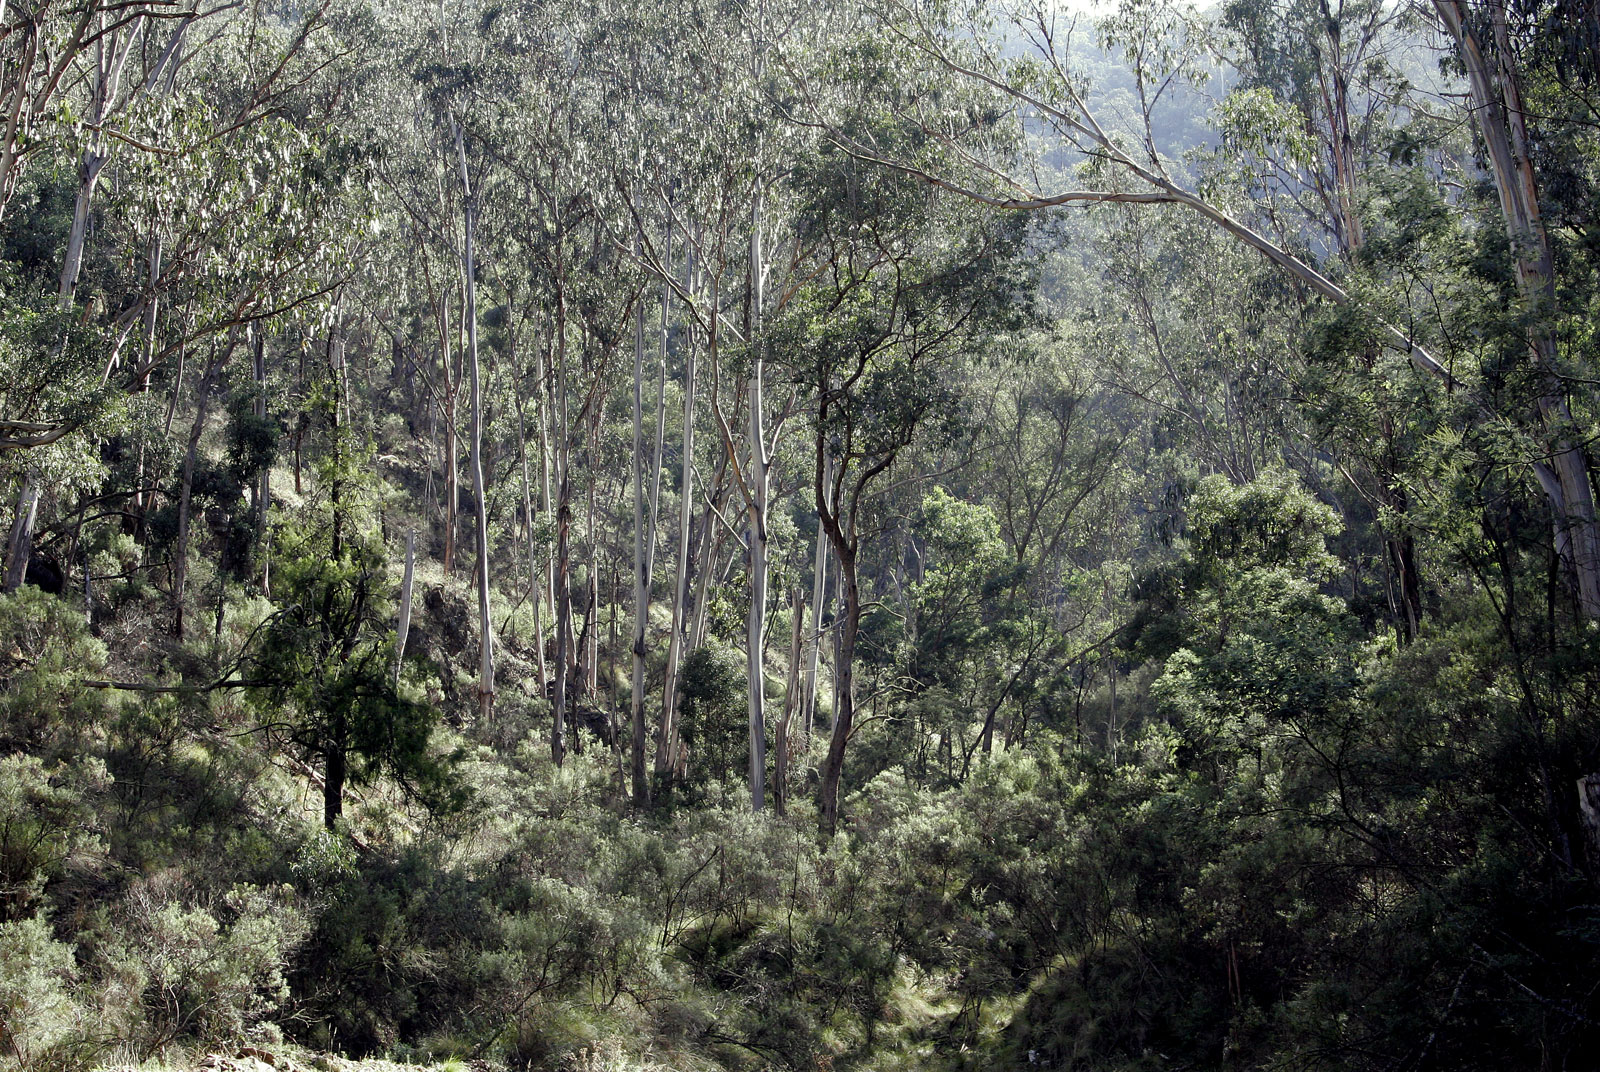 Tuliskan vegetasi yang dominan di australia